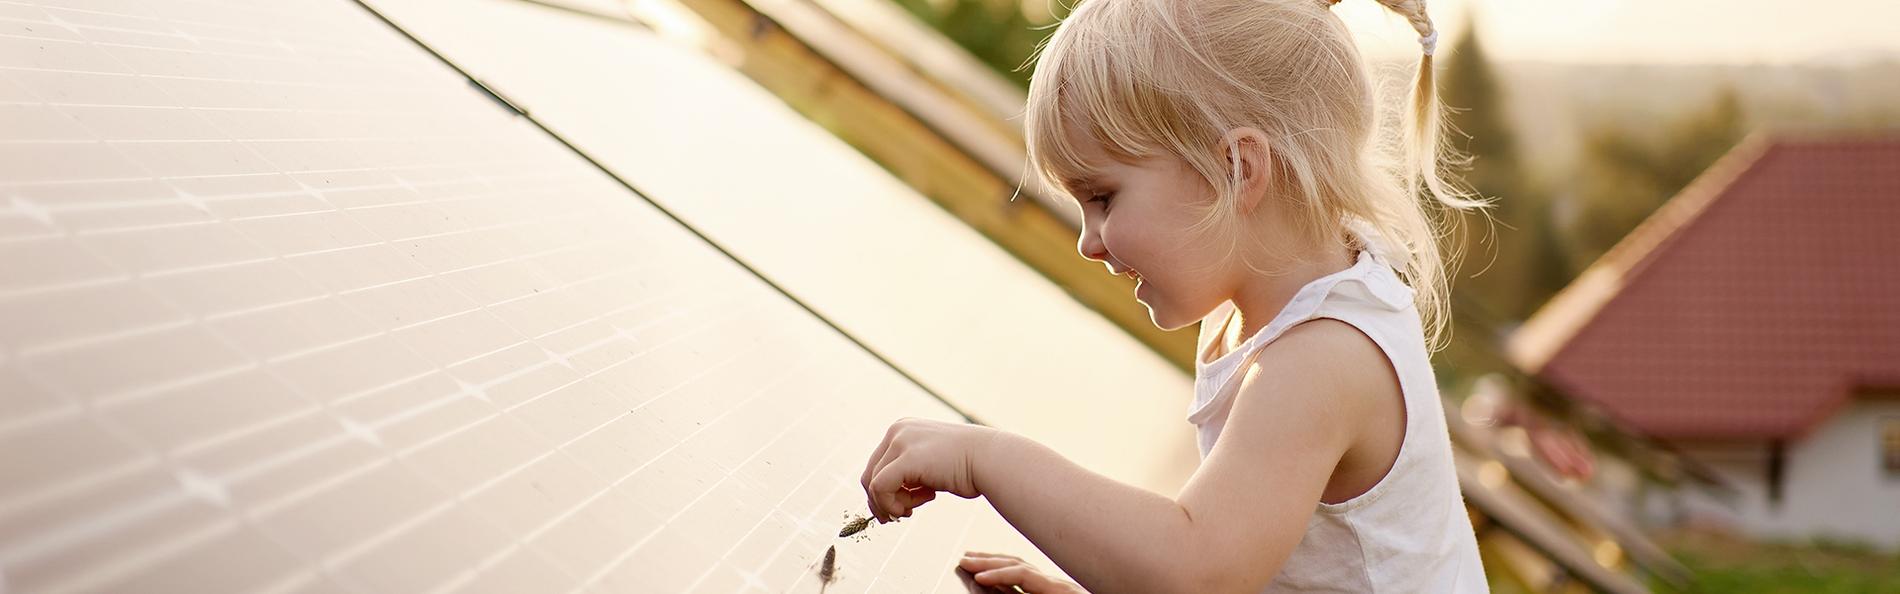 Kleines Mädchen spielt an Photovoltaikanlage